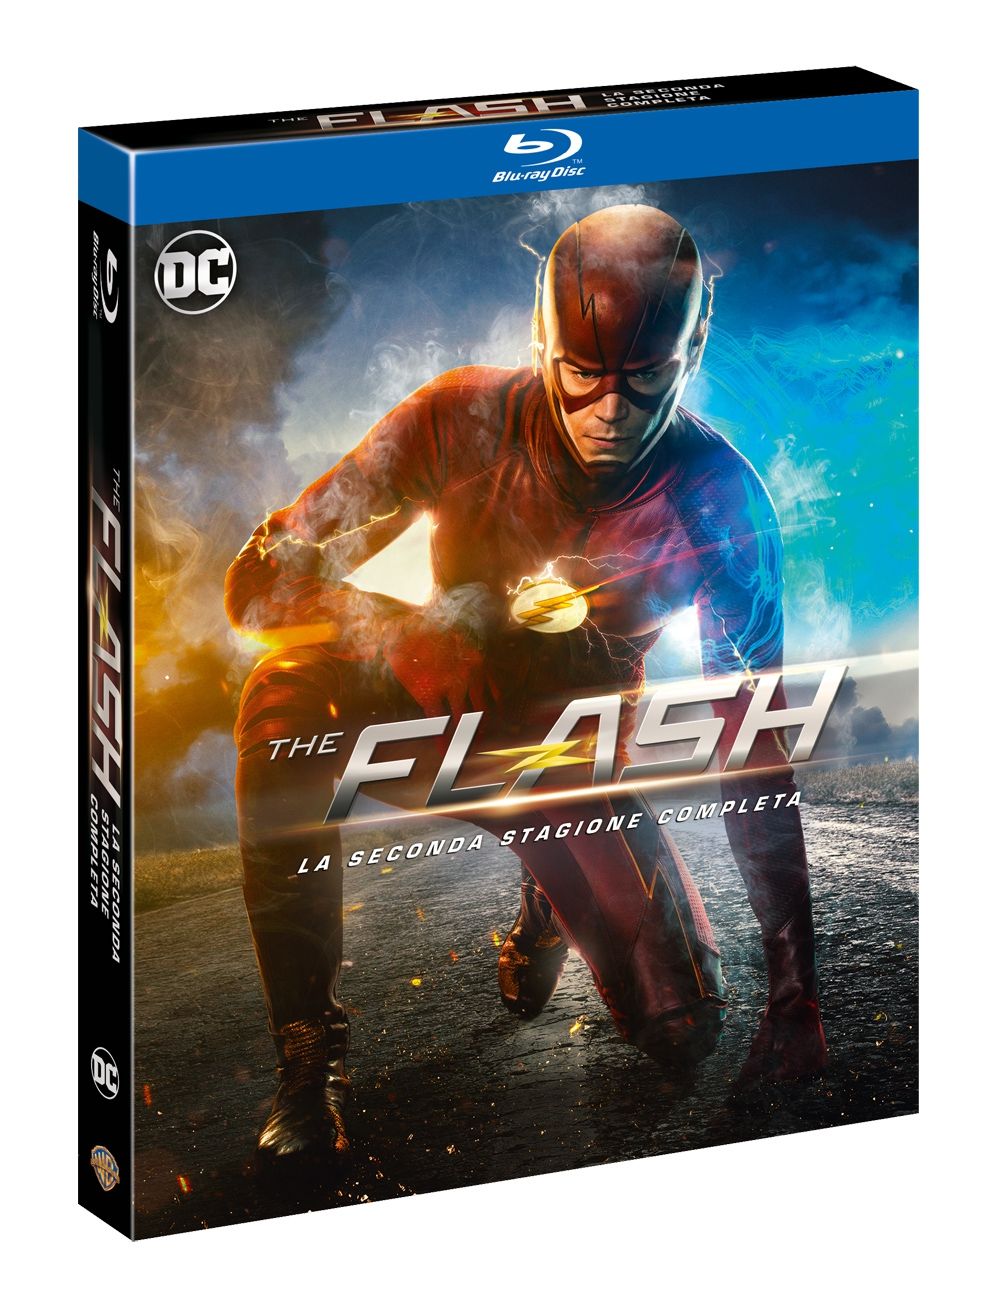 La seconda stagione di The Flash arriva finalmente in DVD e Blu-Ray!